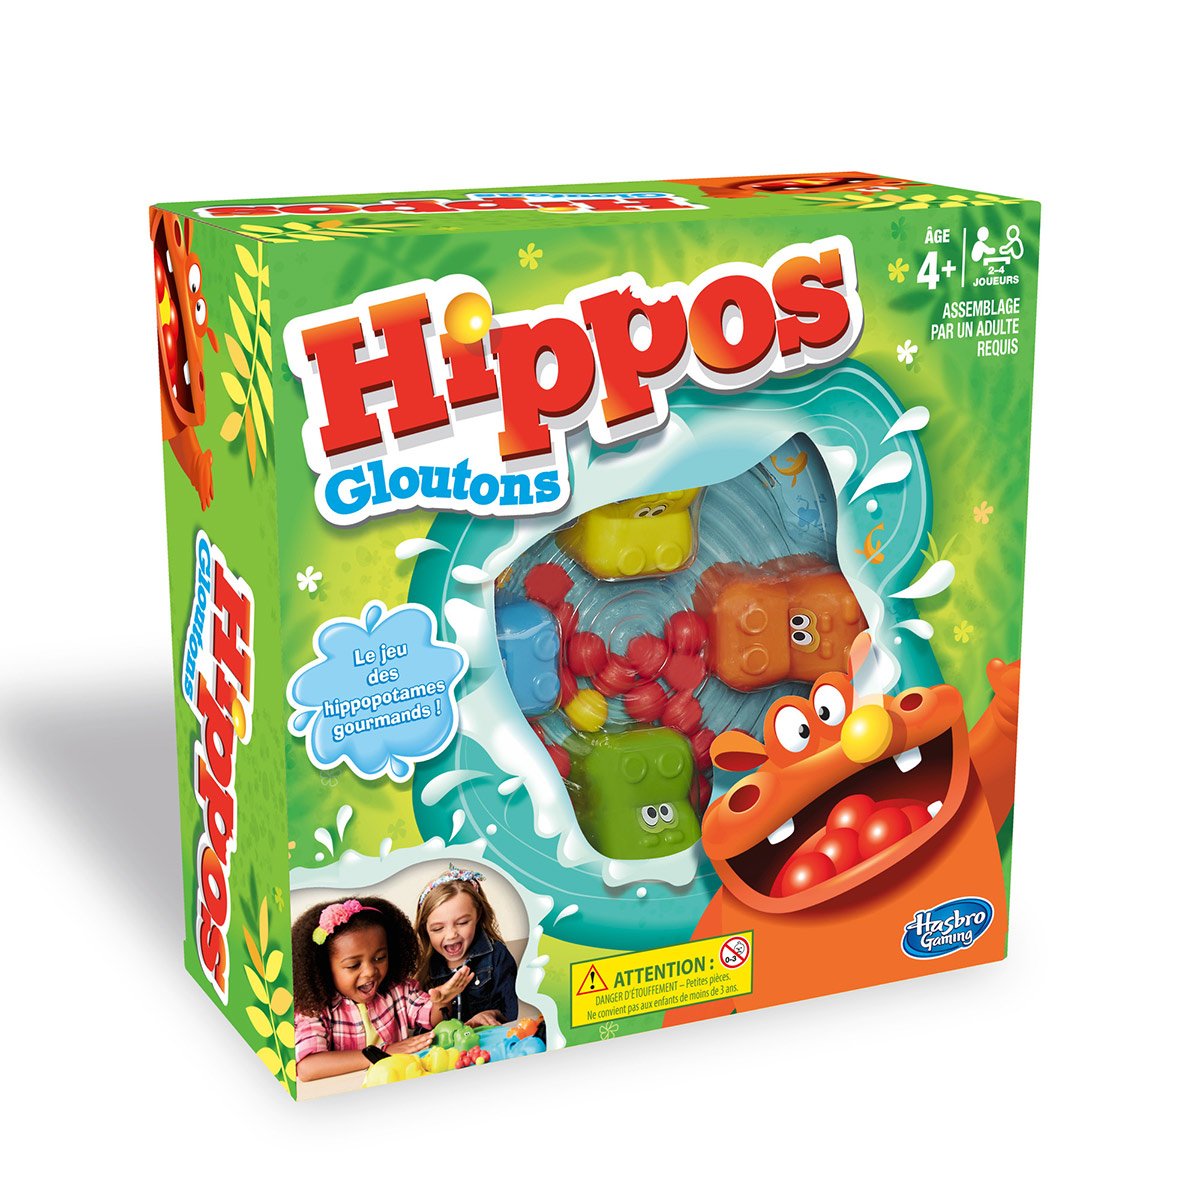 Hippos gloutons - La Grande Récré